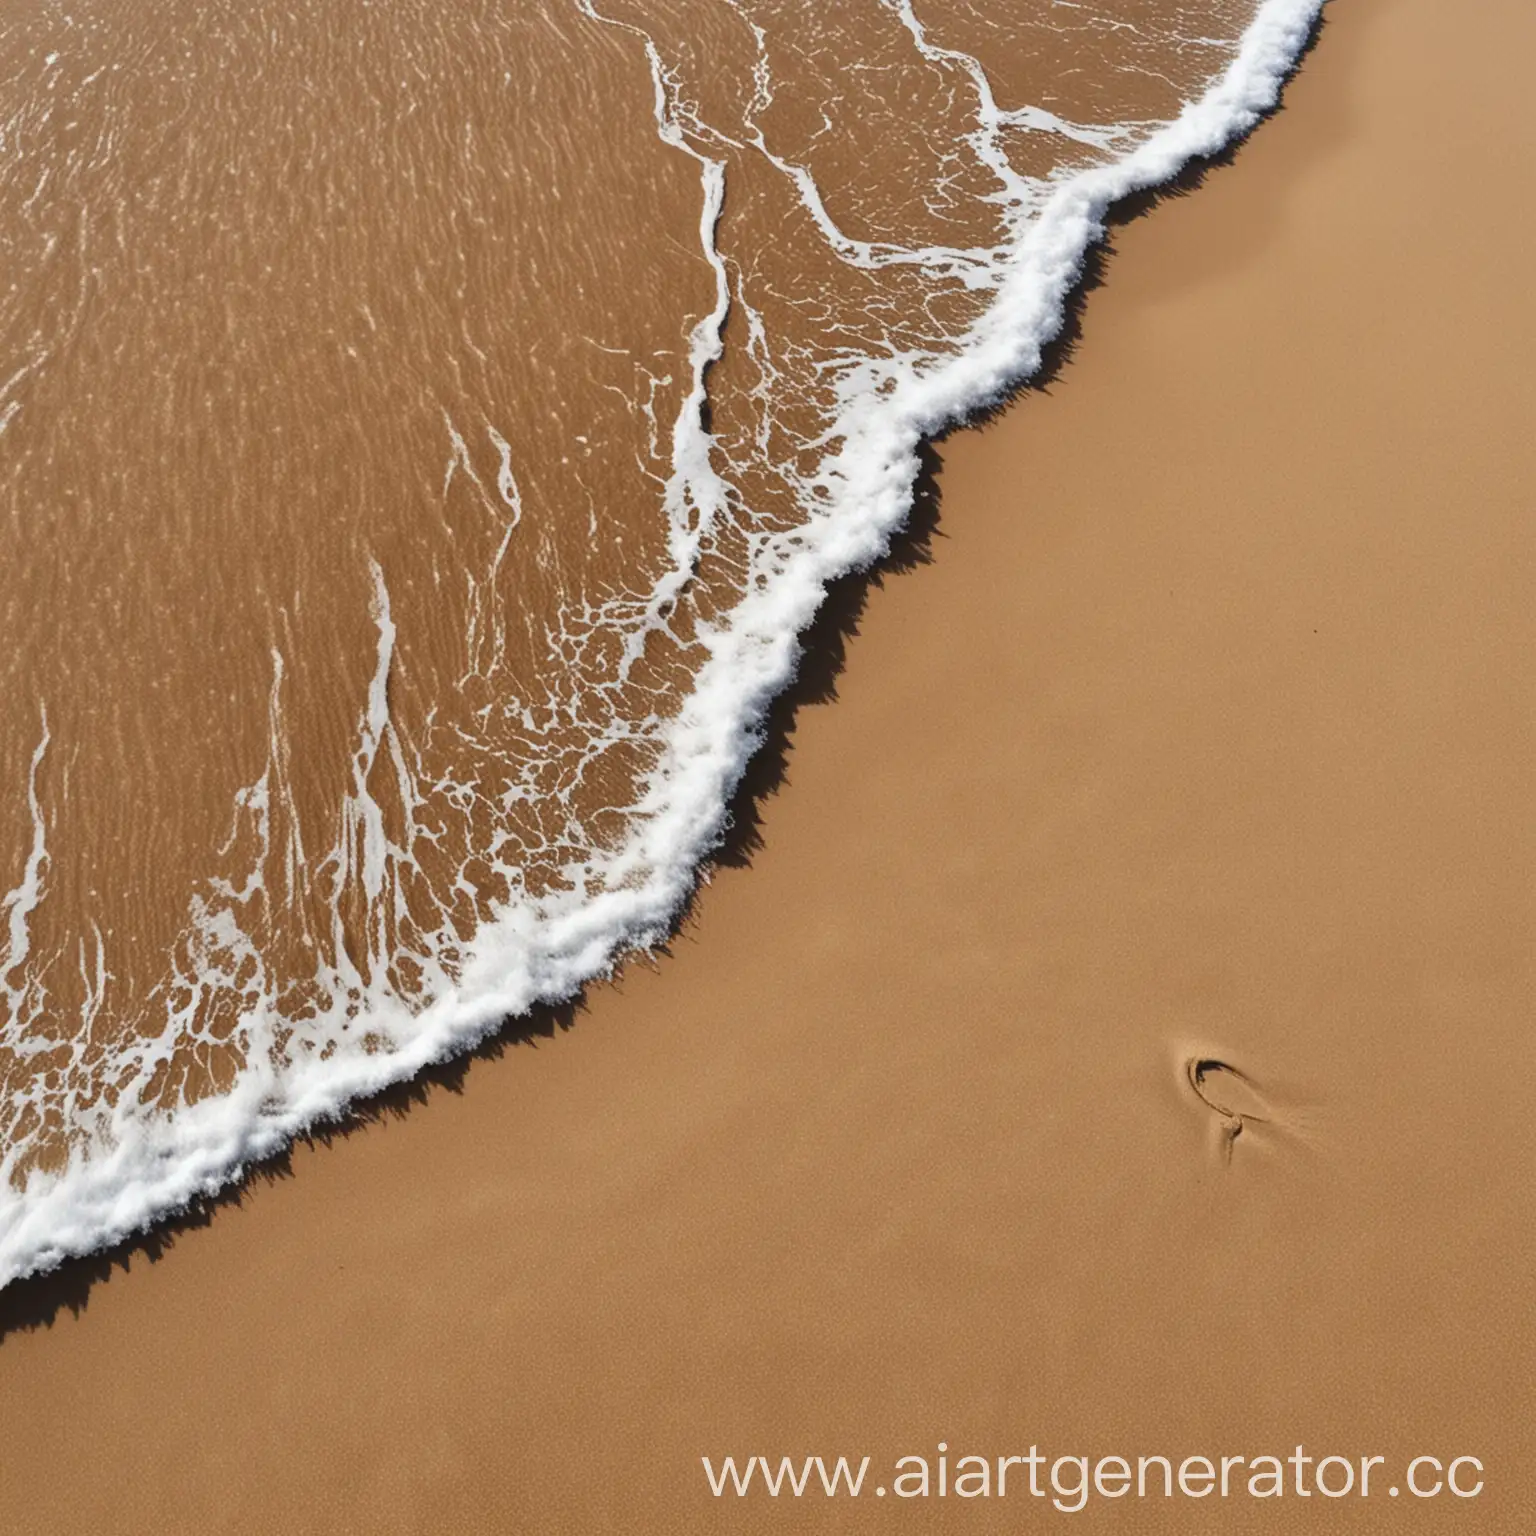 маленькая волна приливает к песку
